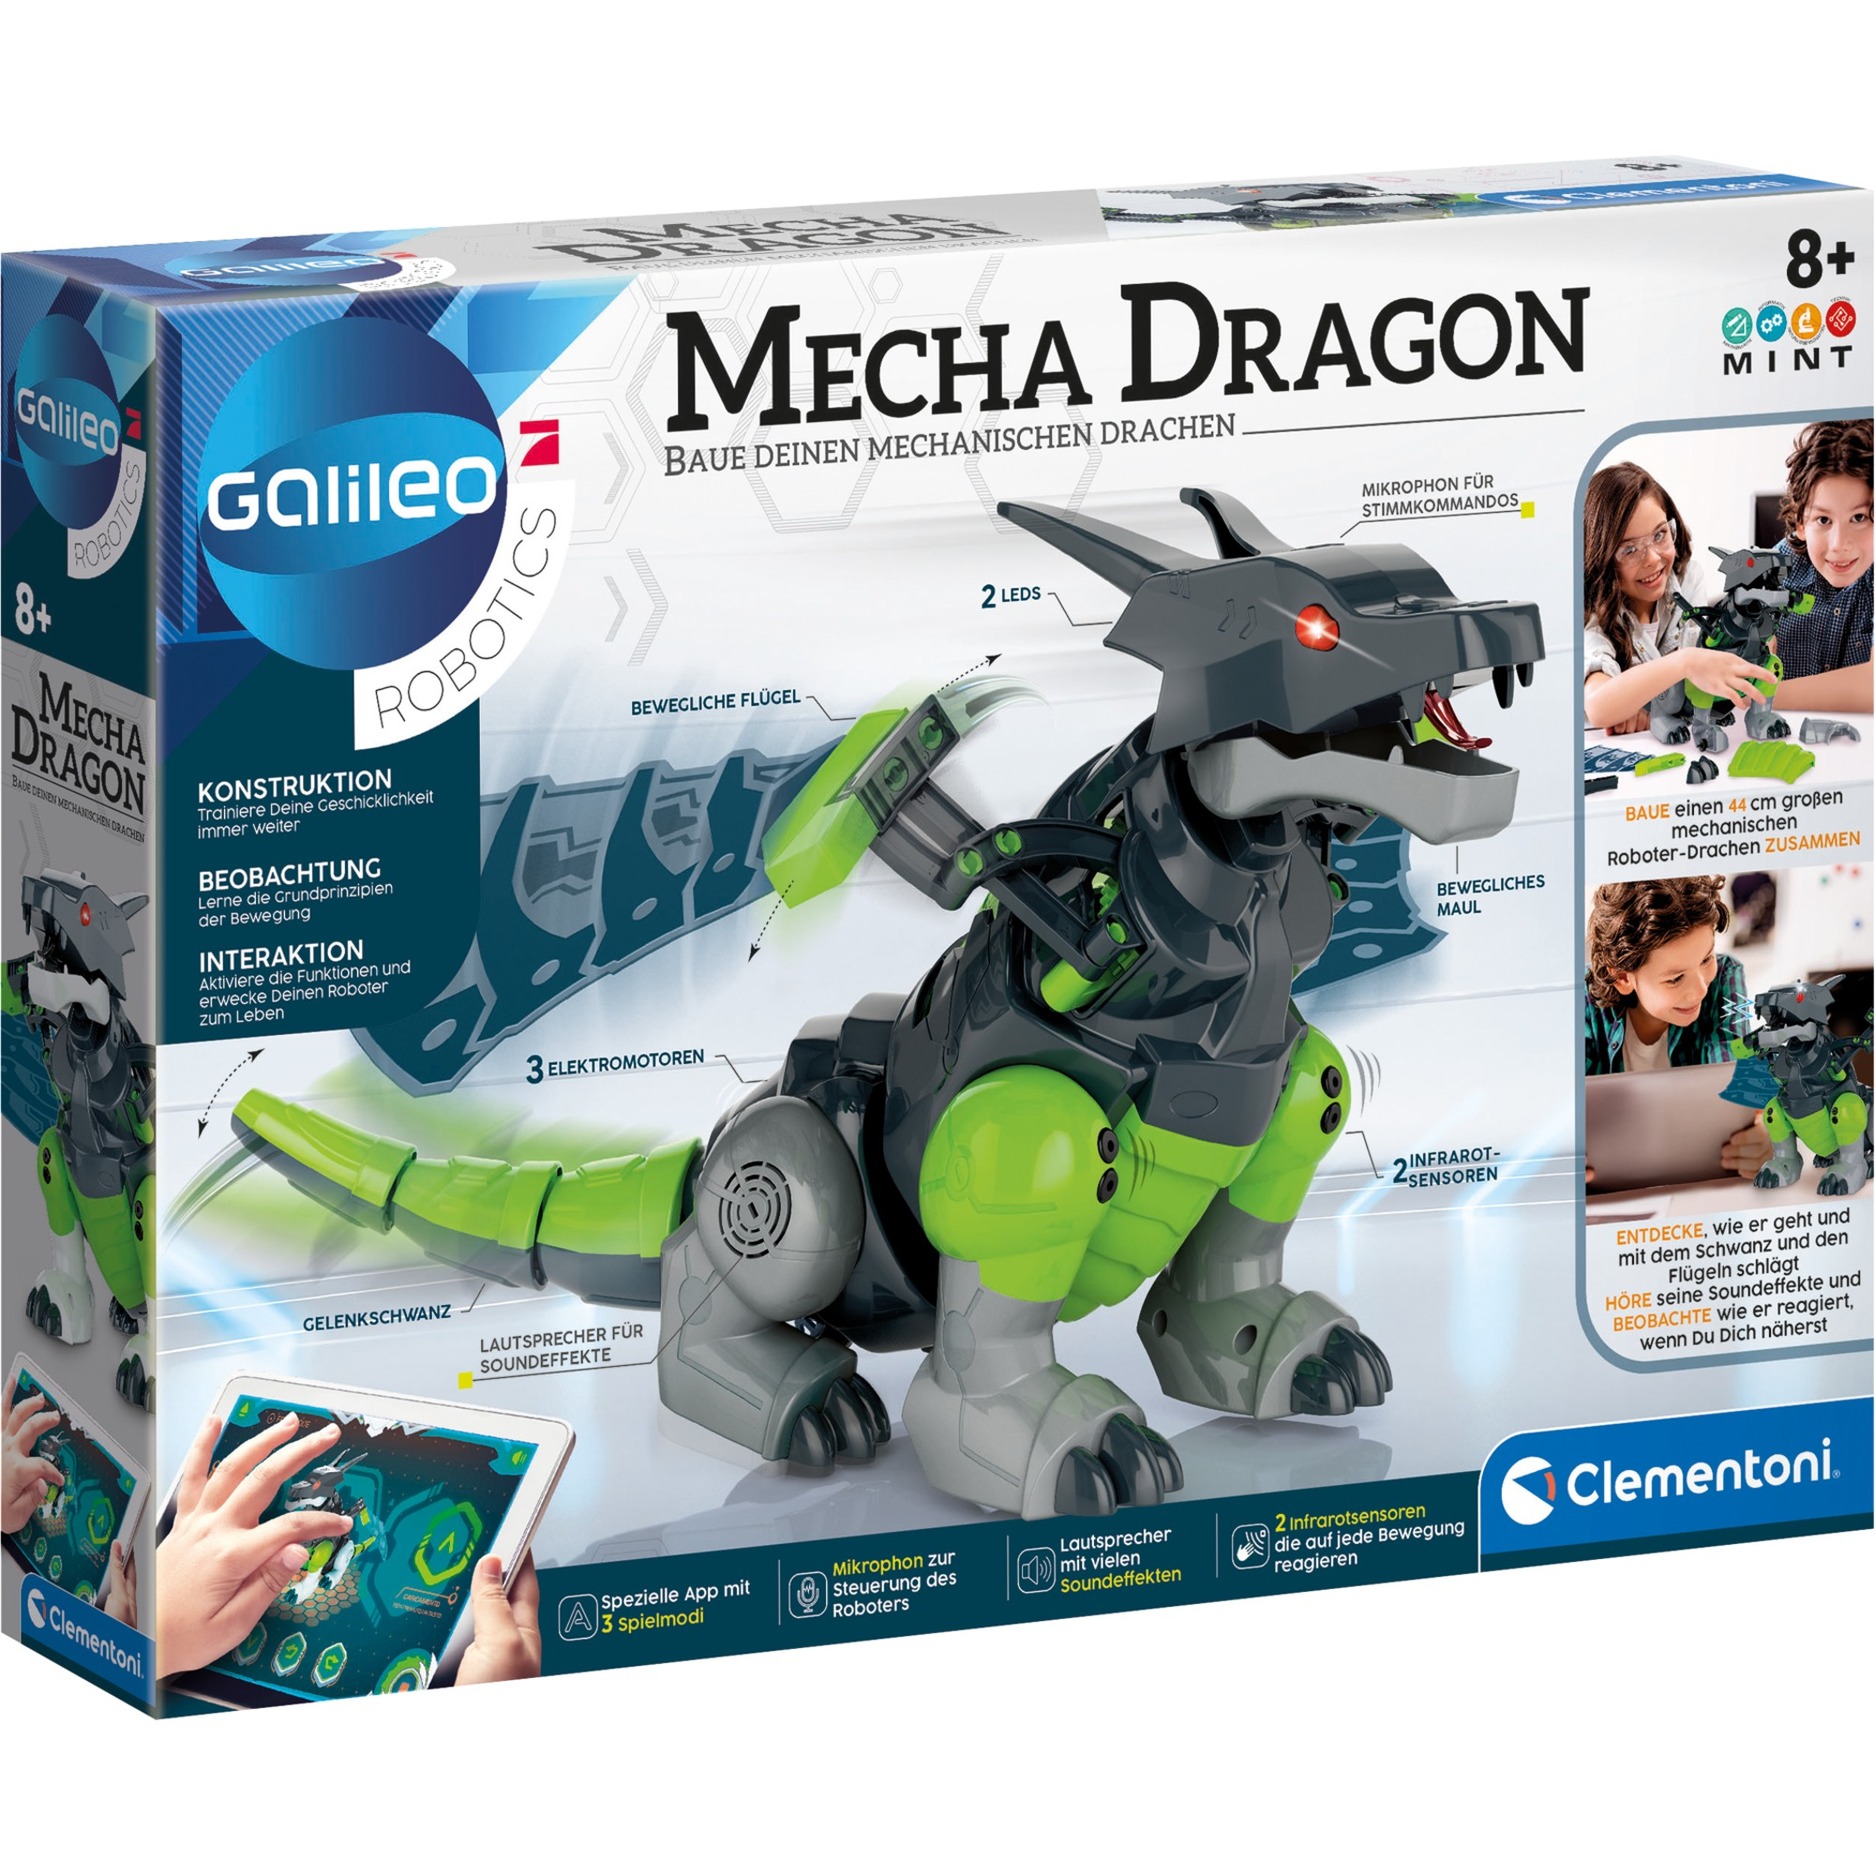 Image of Alternate - Mecha Dragon, Experimentierkasten online einkaufen bei Alternate